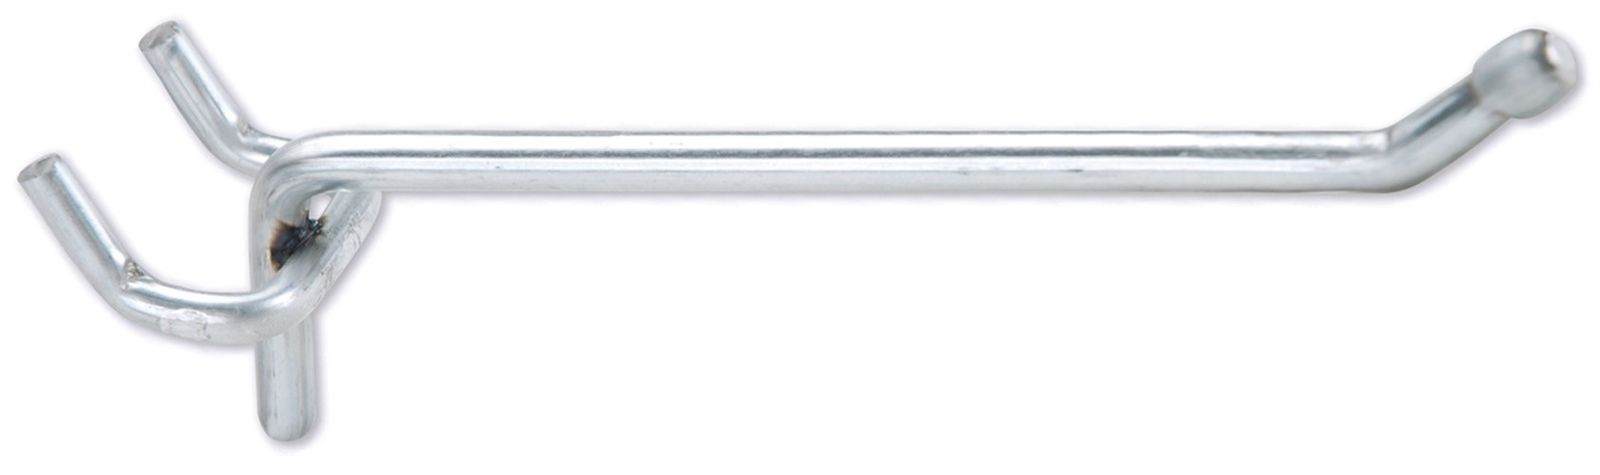 R216S Standard-Duty Peg Hook 6in x .149in Diameter